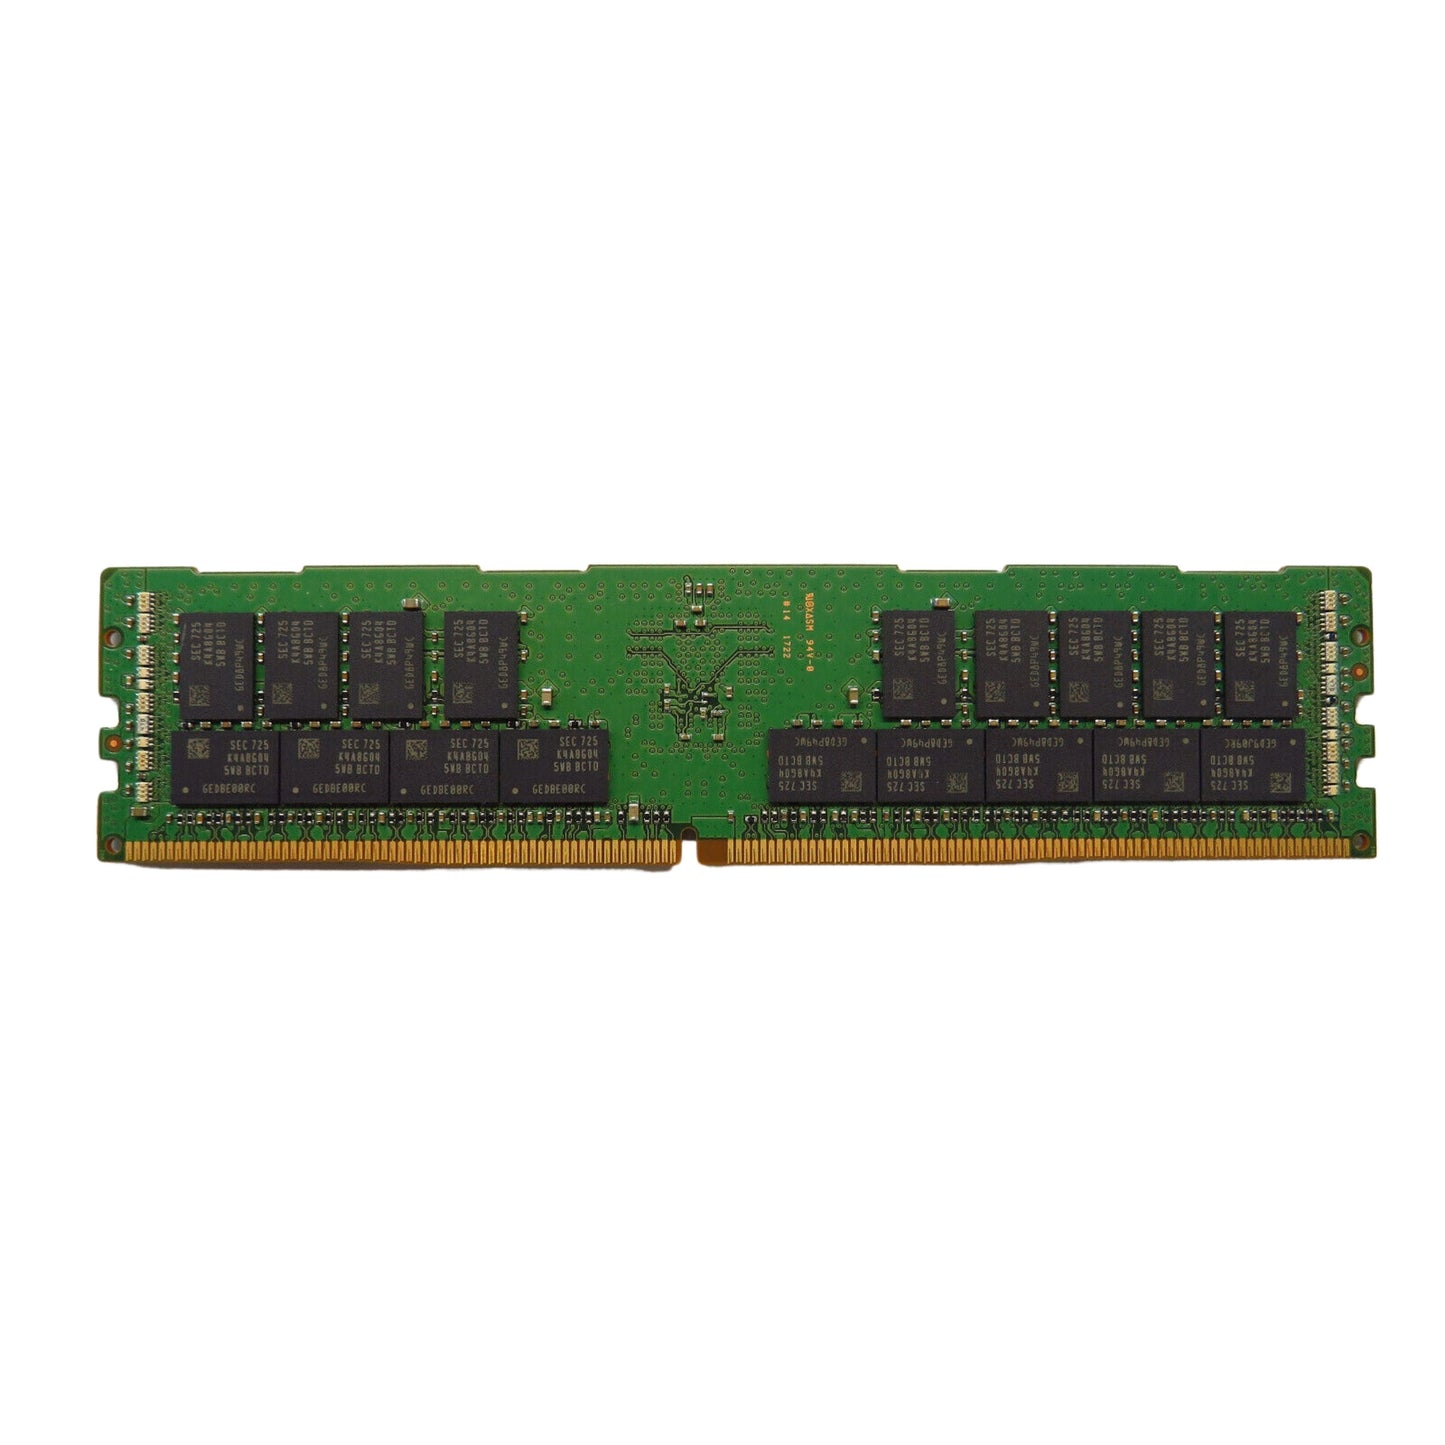 IBM 01EM739 MEM-DR432L-SL02-ER26 32GB DDR4 2666MHz LRDIMM Server Memory (Refurbished)